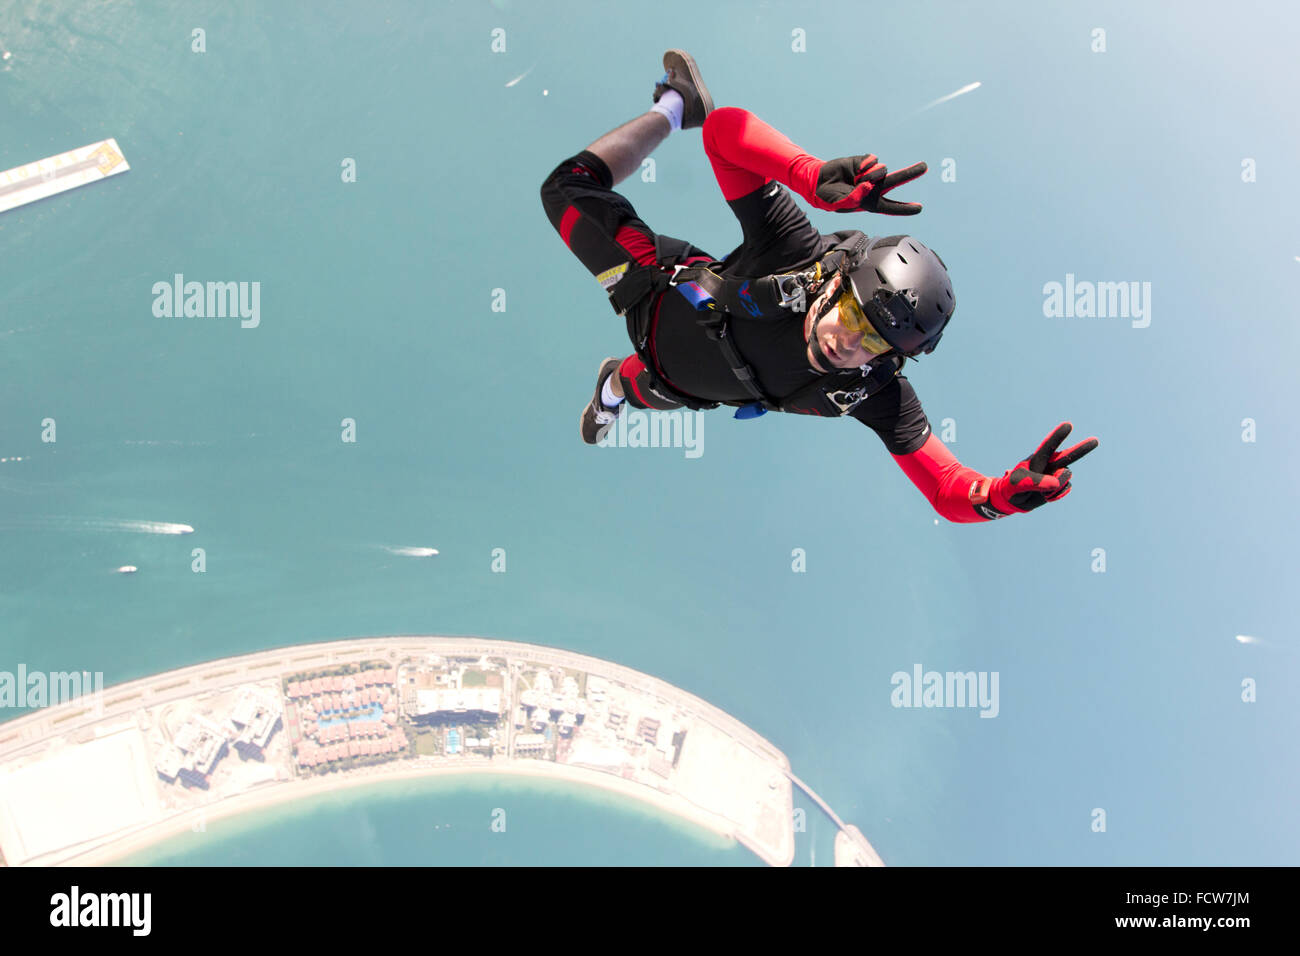 Cet homme a sauté d'un avion sur la plage de Dubaï. Ressemble à ce qu'il jouit du saut en parachute d'après son doigt signes. Banque D'Images